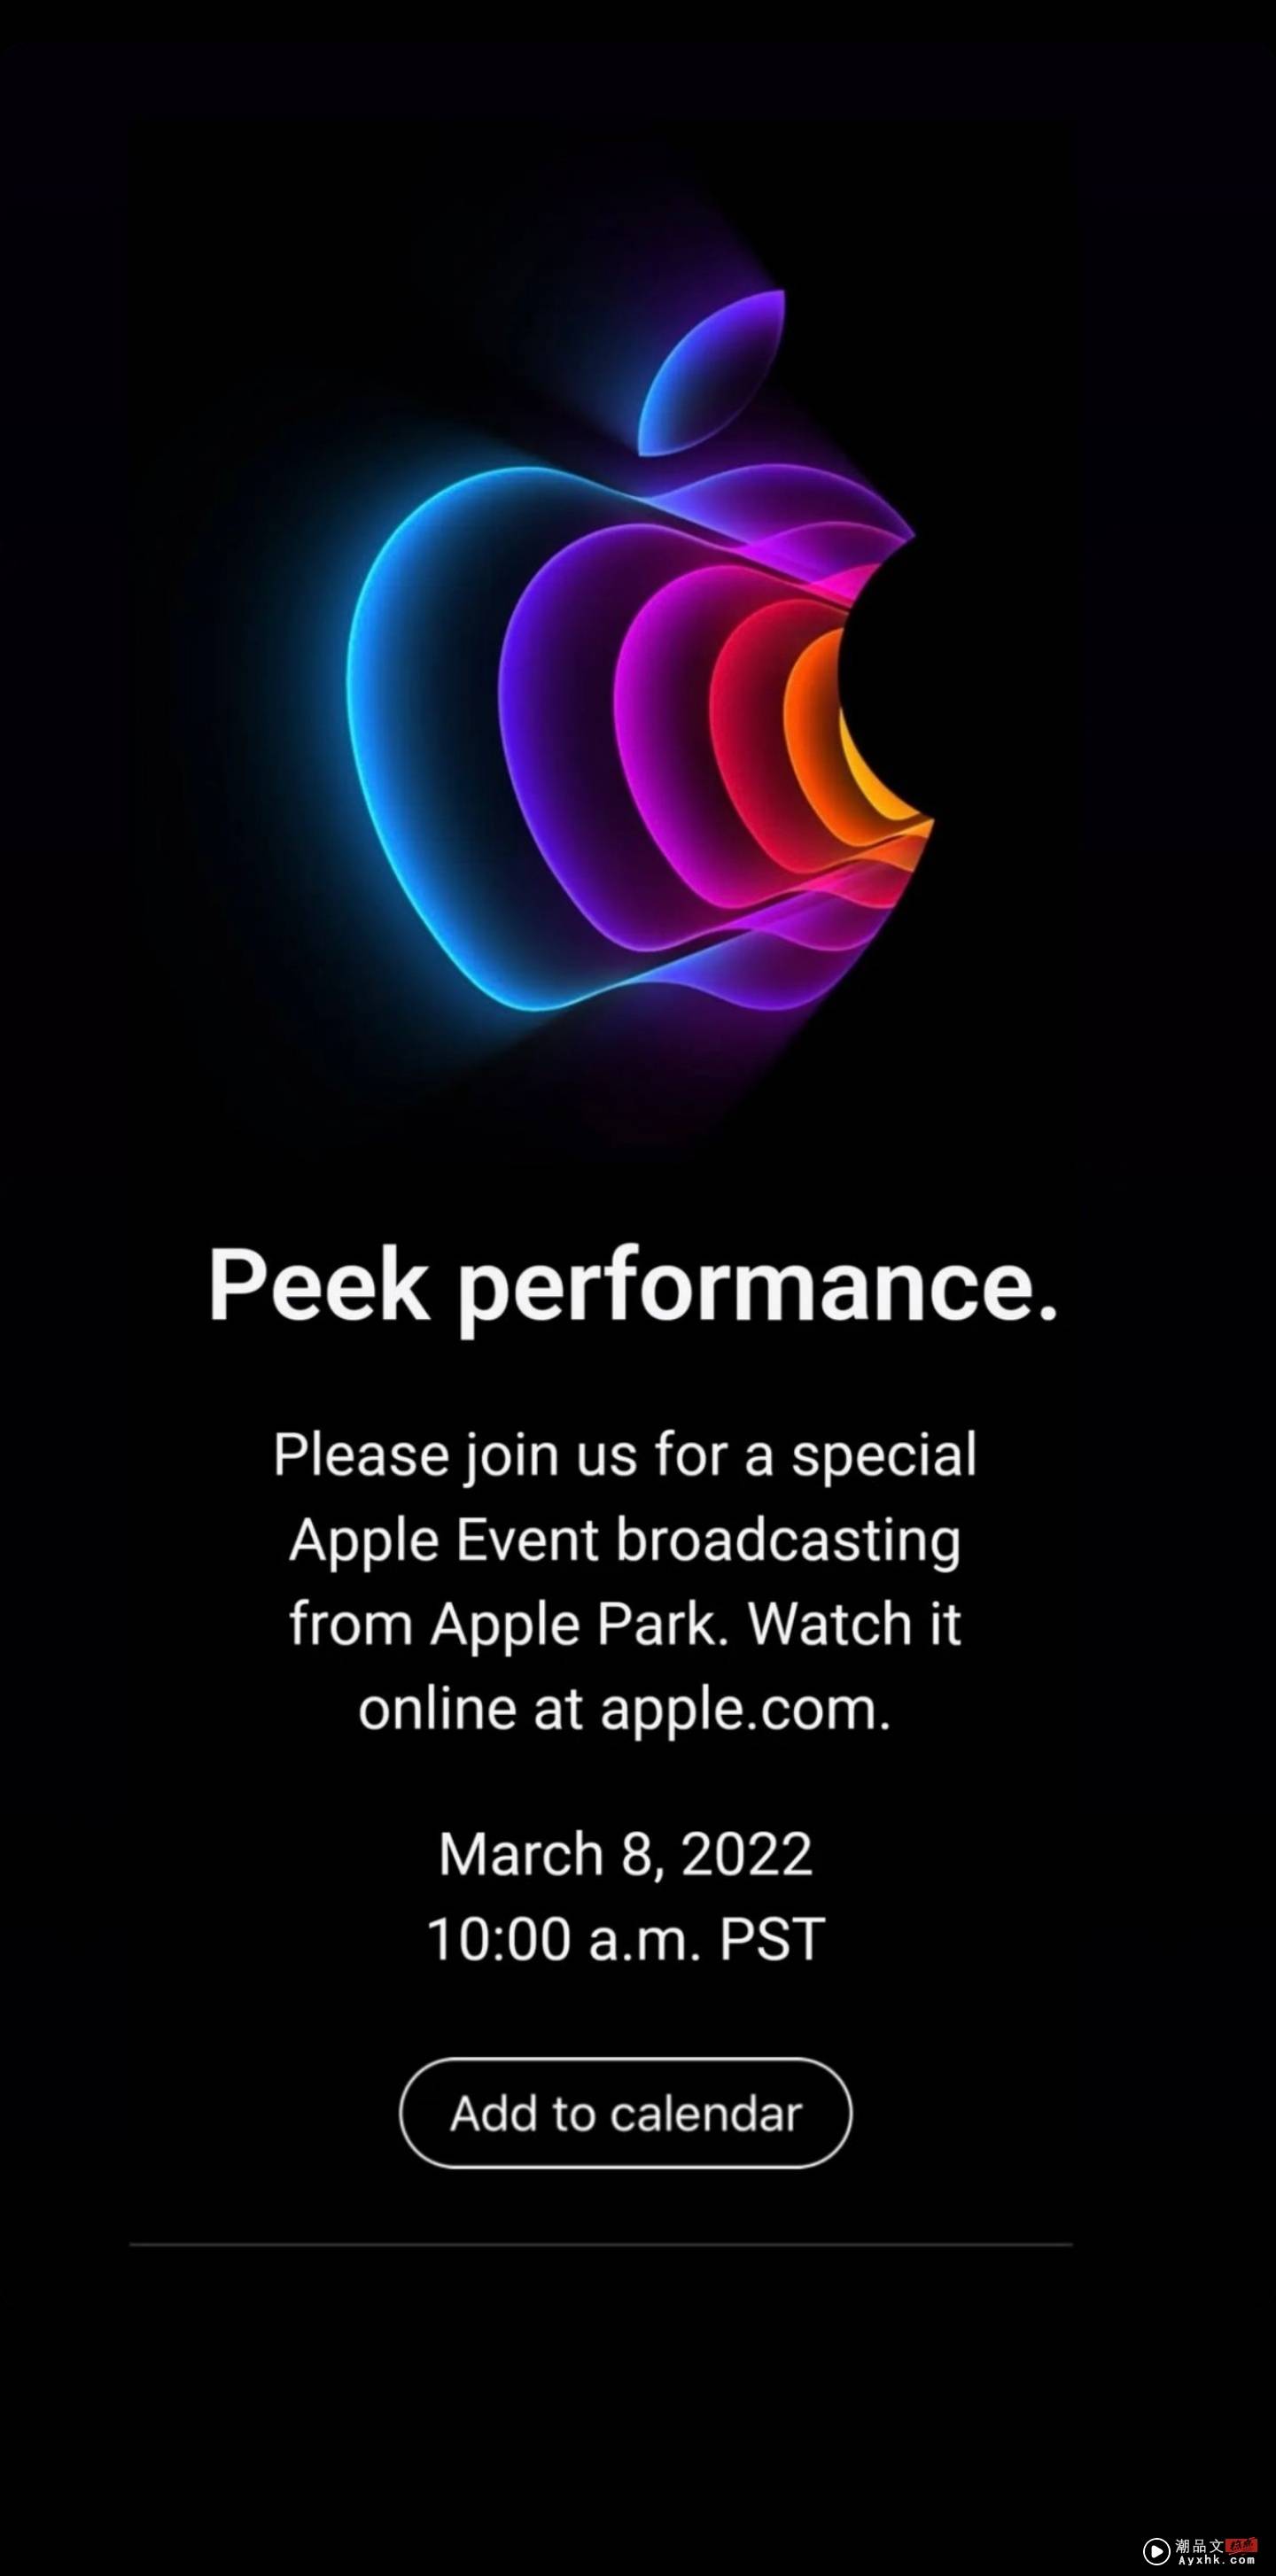 苹果确定在下周 3/9 举办春季发表会！将迎来全新的 iPhone SE、iPad Air 5 和 Mac Mini？ 数码科技 图1张